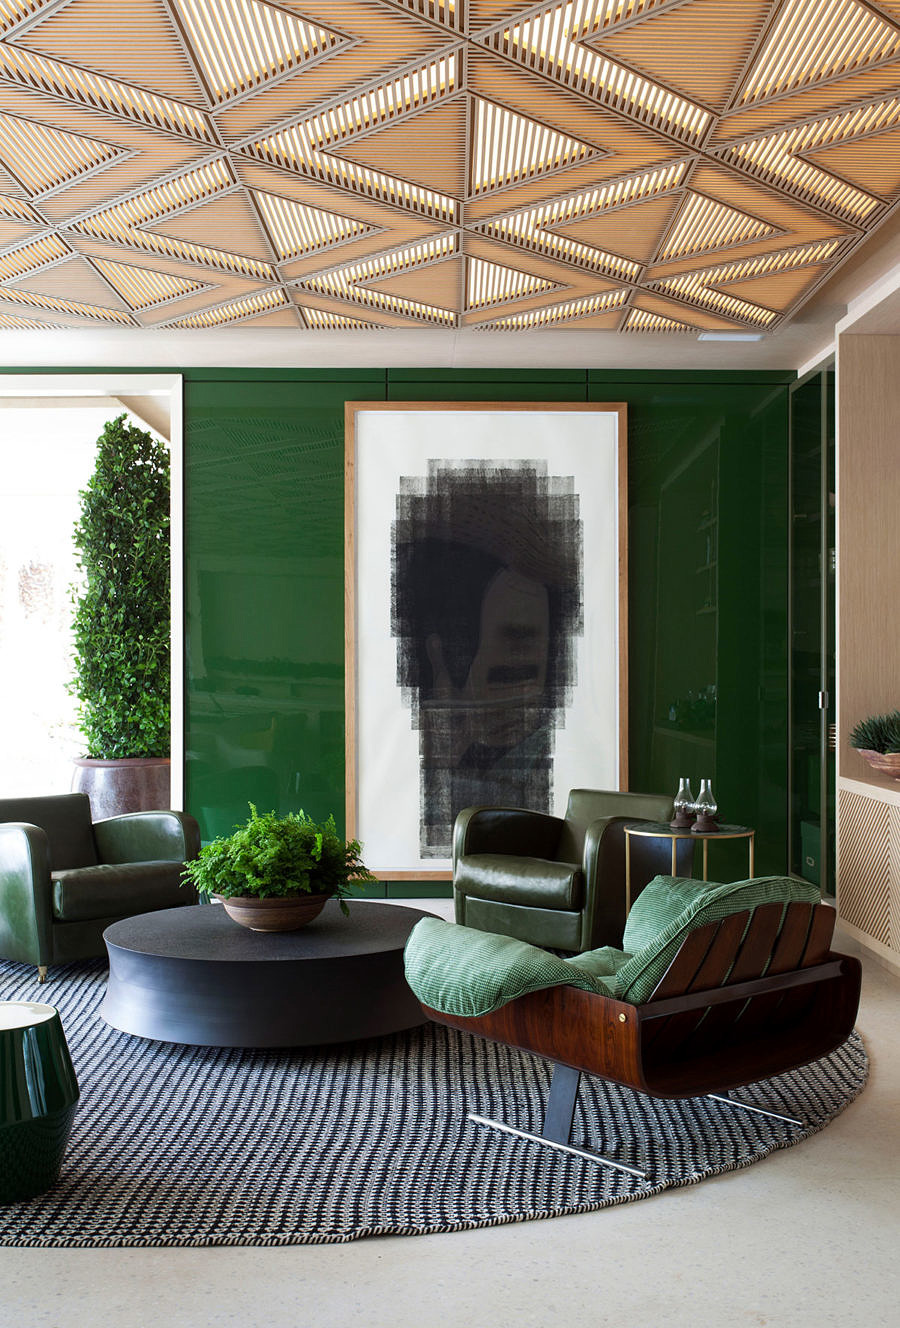 sofá verde veludo roberto migotto casacor sao paulo 2018 le riad bontempo decoração interiores